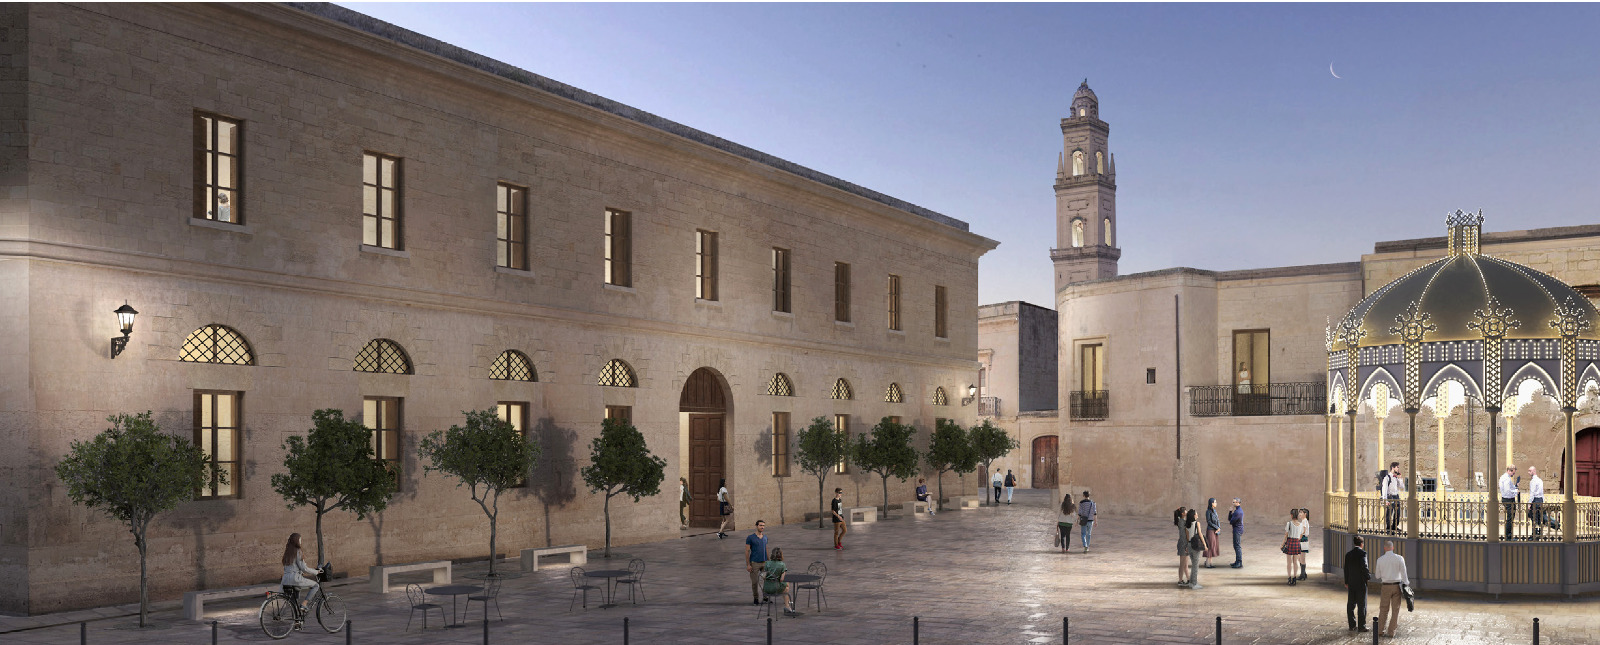 Galleria Nuove risorse per le residenze universitarie della Puglia - Diapositiva 3 di 3